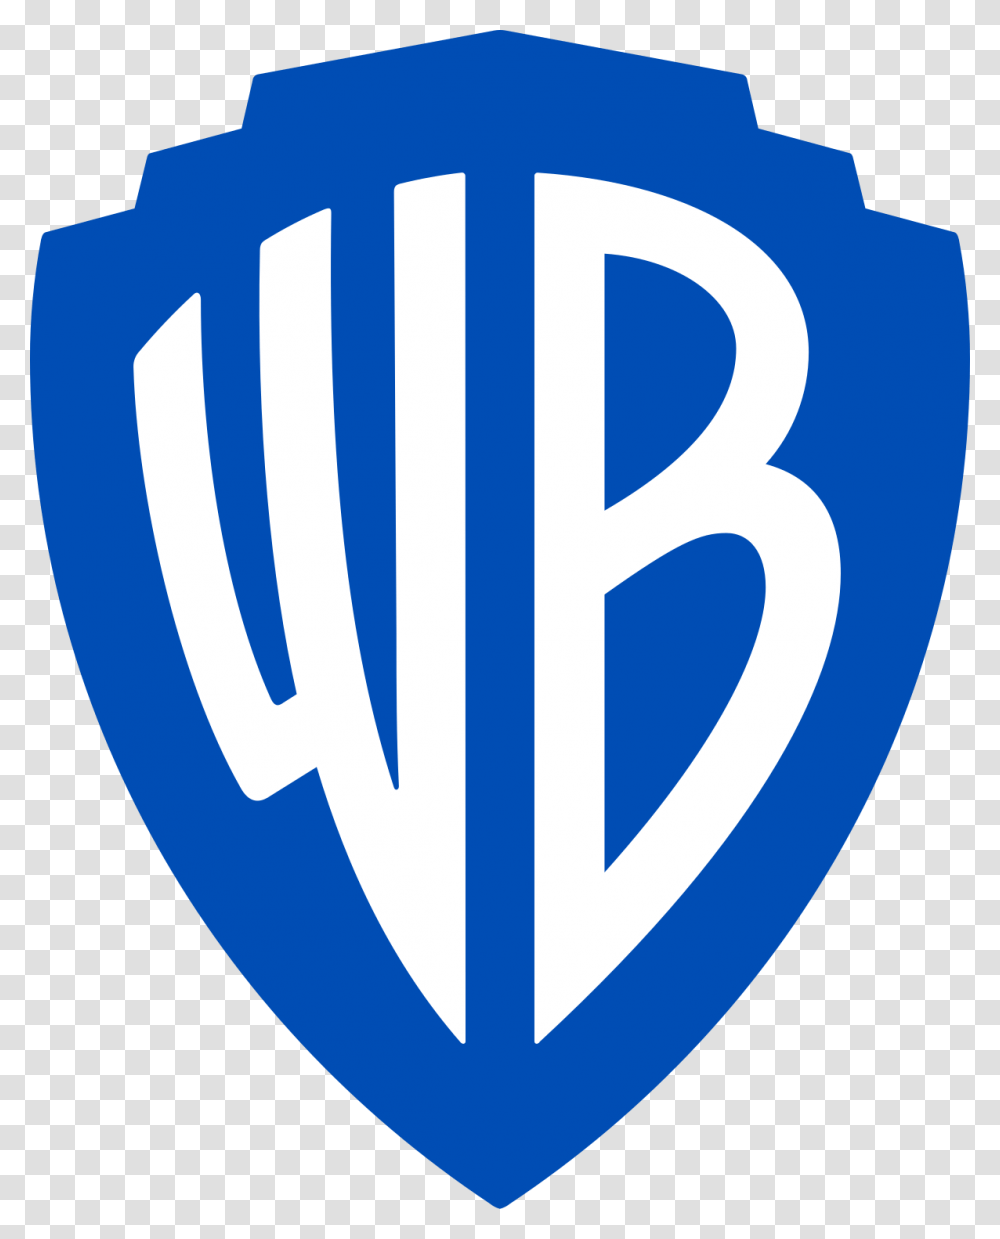 Warner Bros Logo 2019, Sweets, Food, Armor Transparent Png